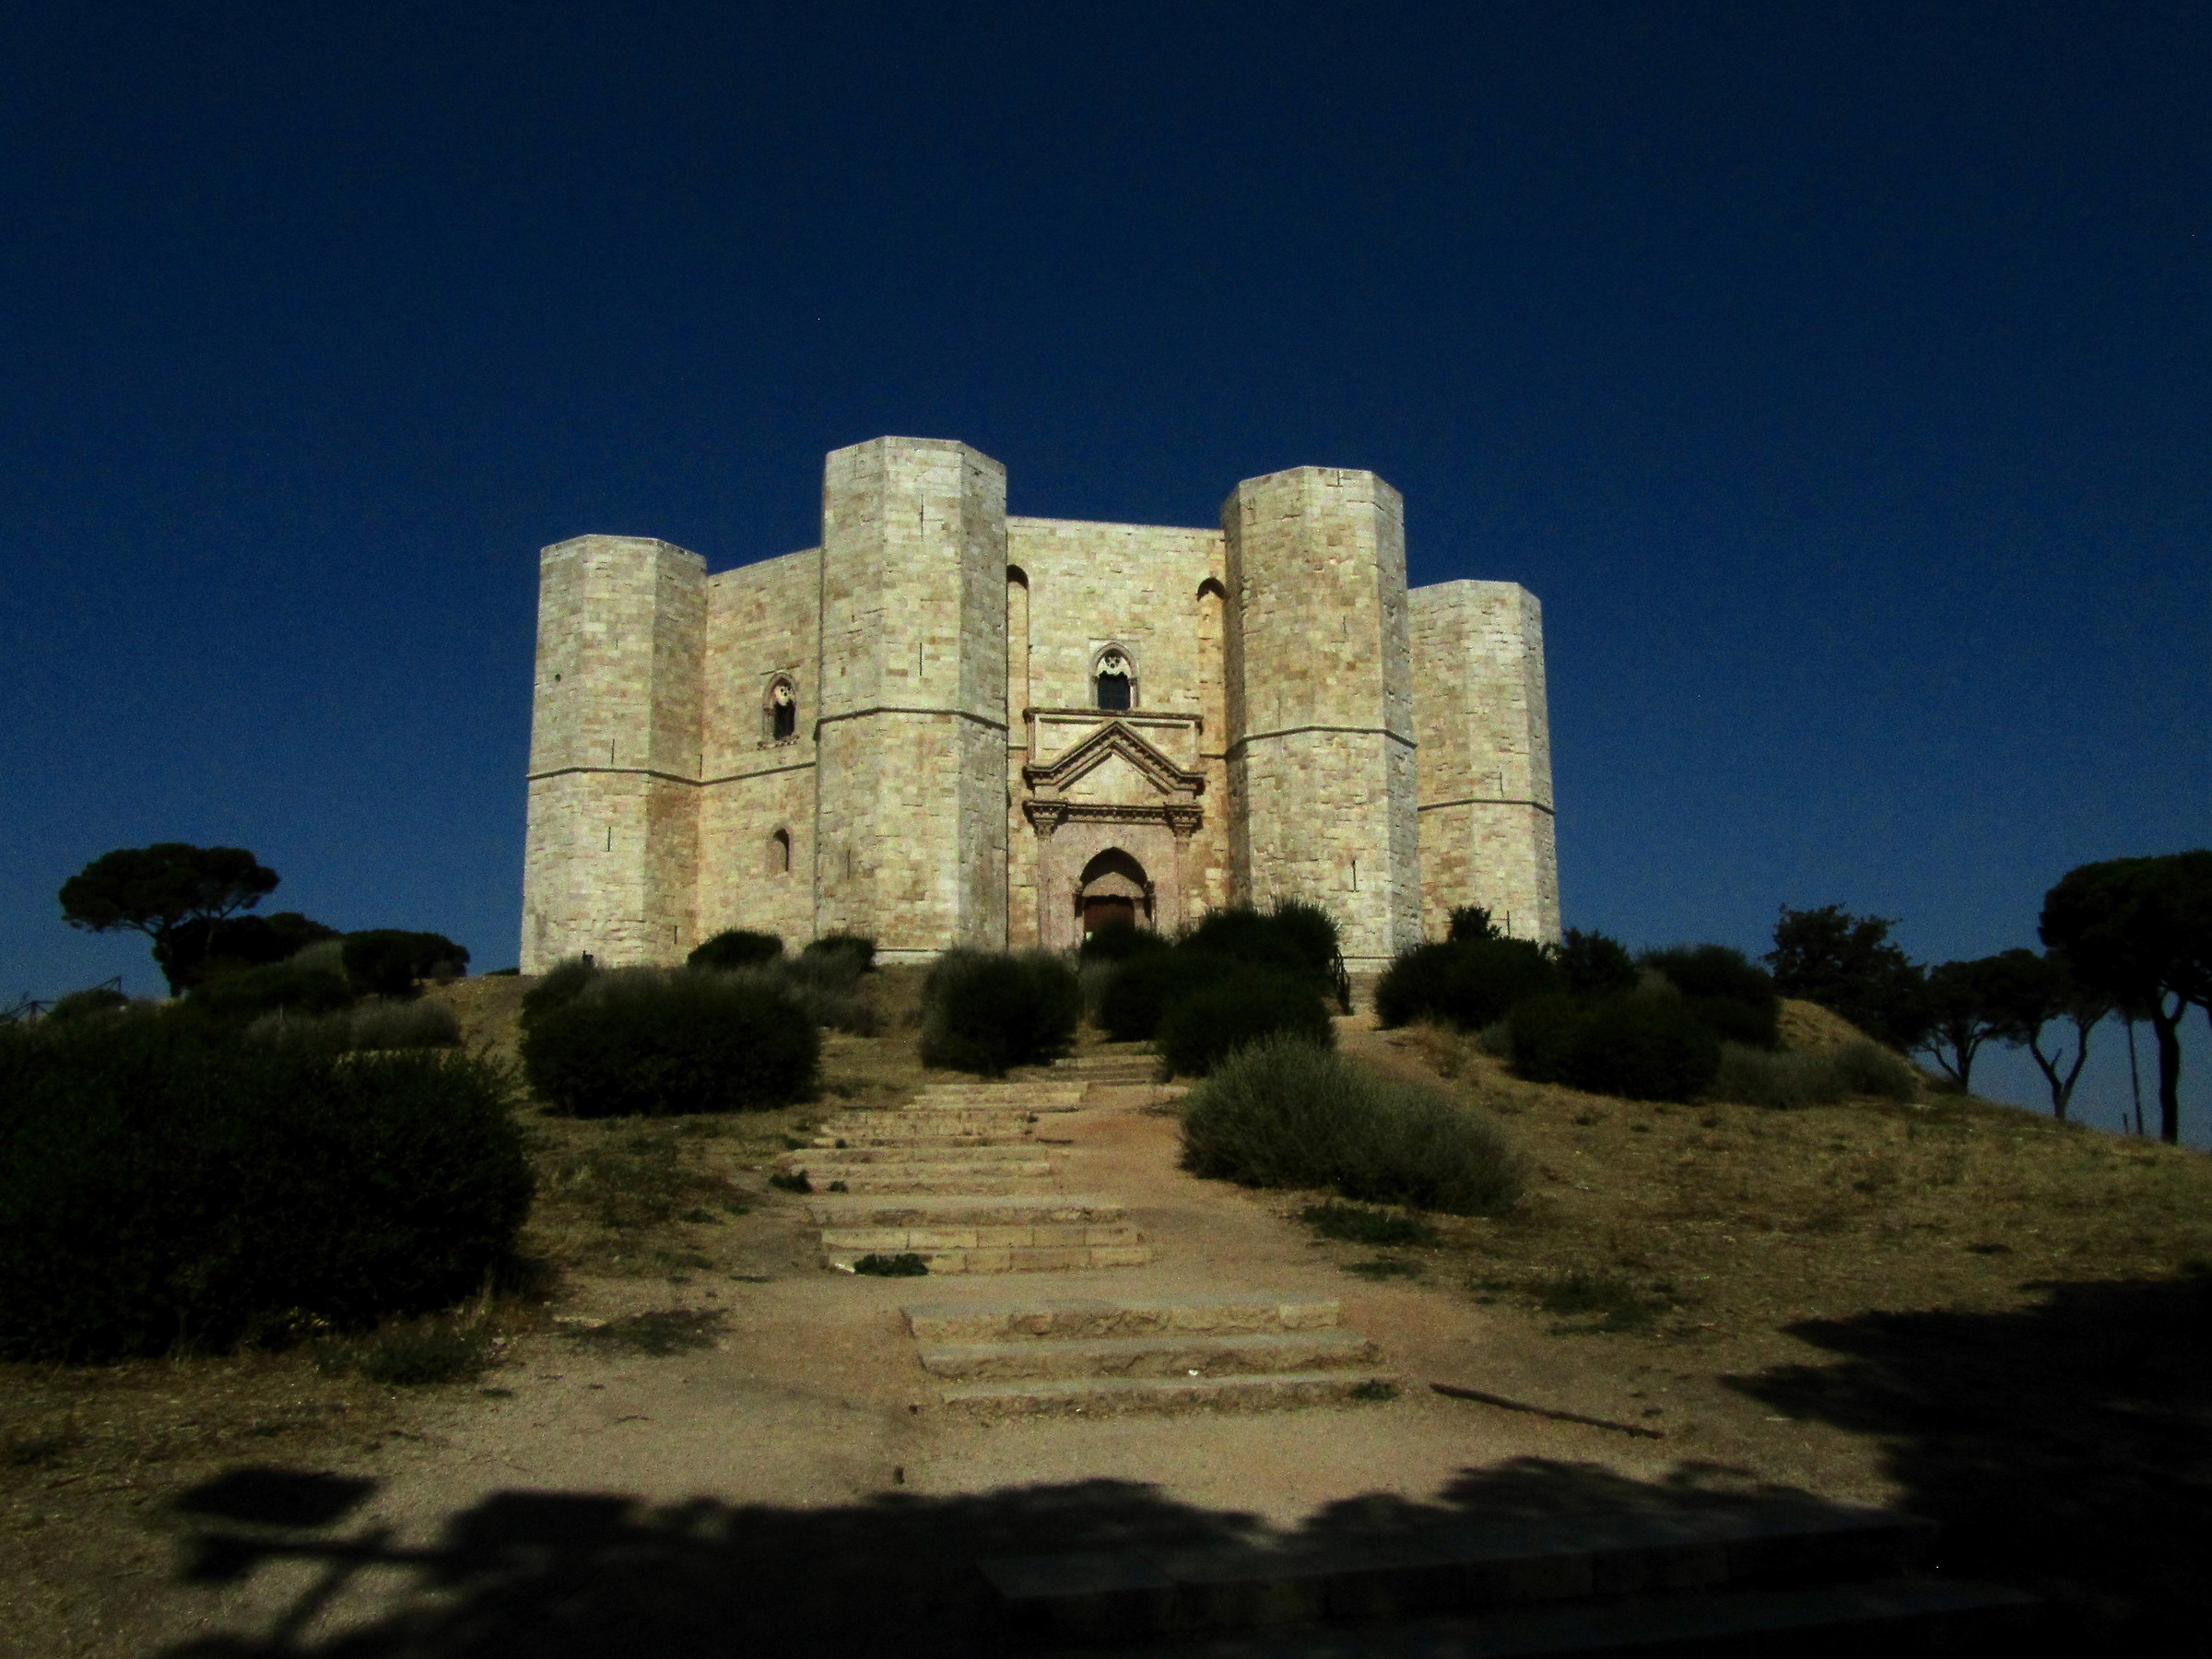 Castel del monte...